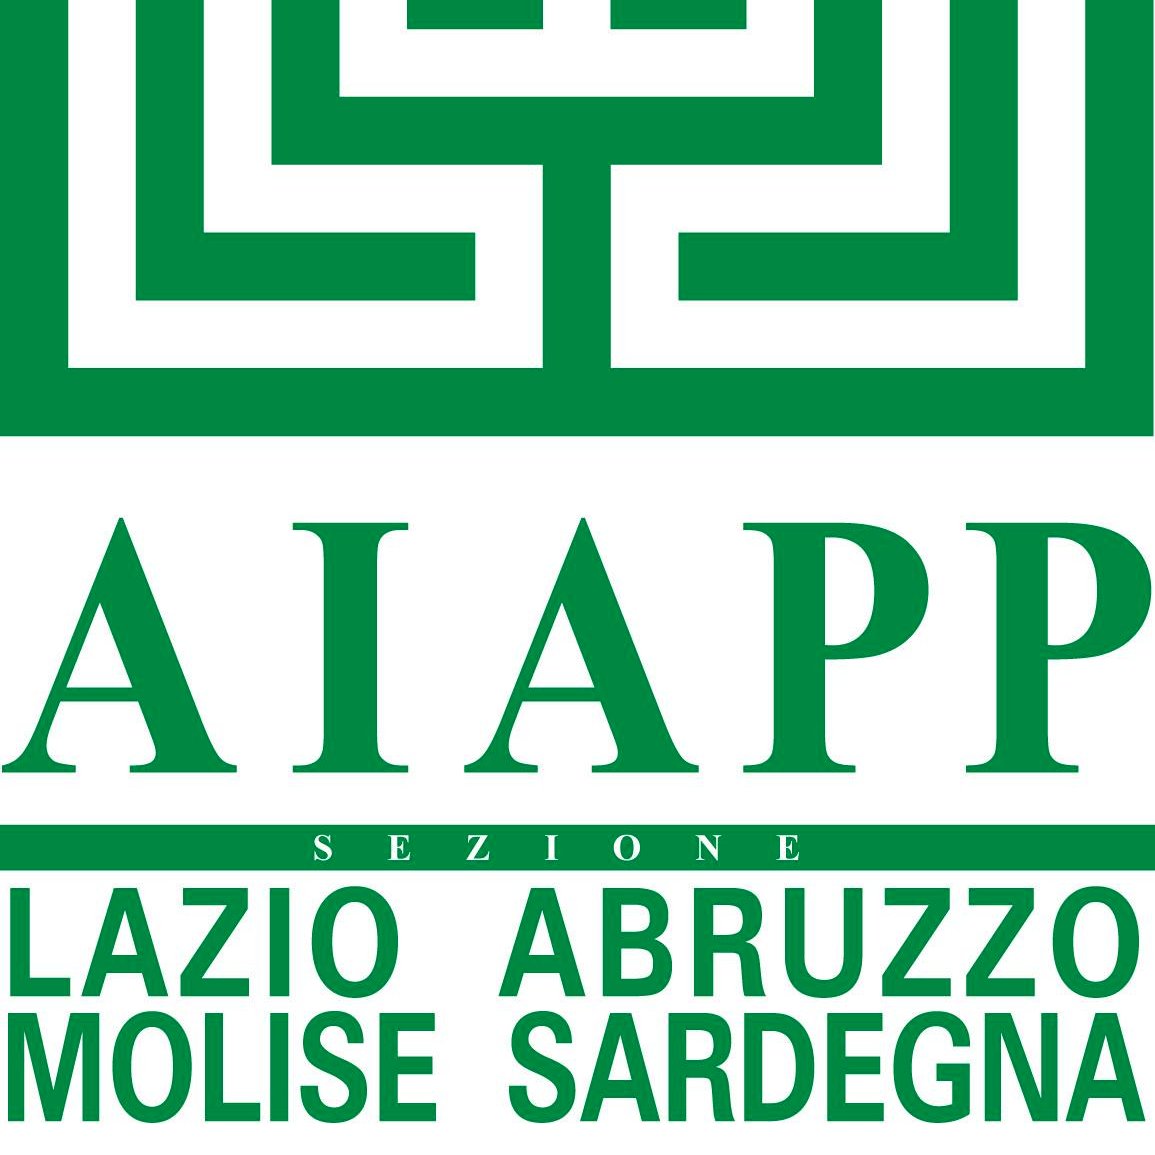 AIAPP Sezione Lazio Sardegna Abruzzo Molise - Associazione Italiana di Architettura  del Paesaggio  https://t.co/ZePp6XMWgz  
instagram@aiapp_lams 
FB@aiappLAMS